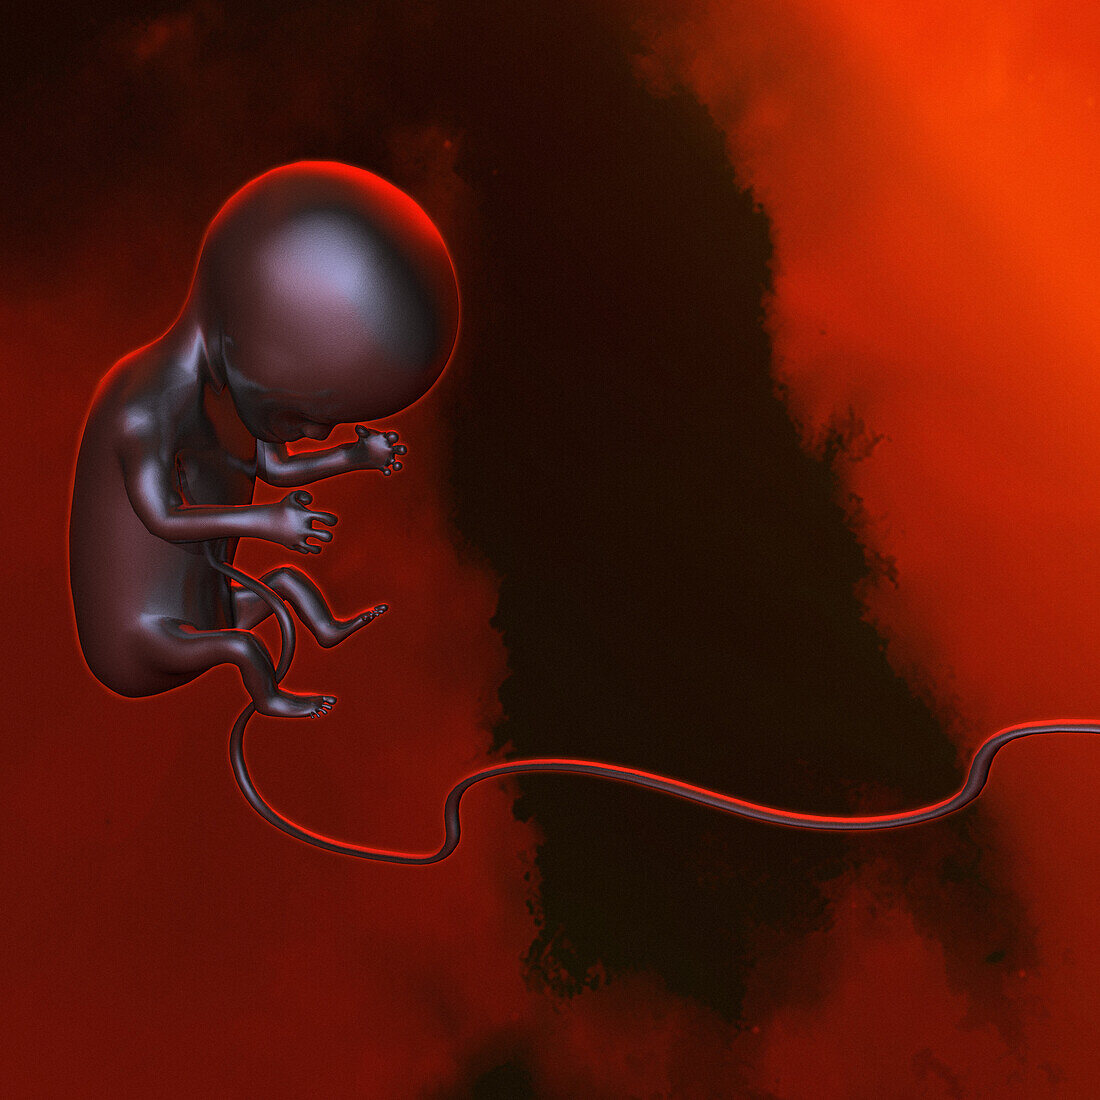 Foetus, illustration